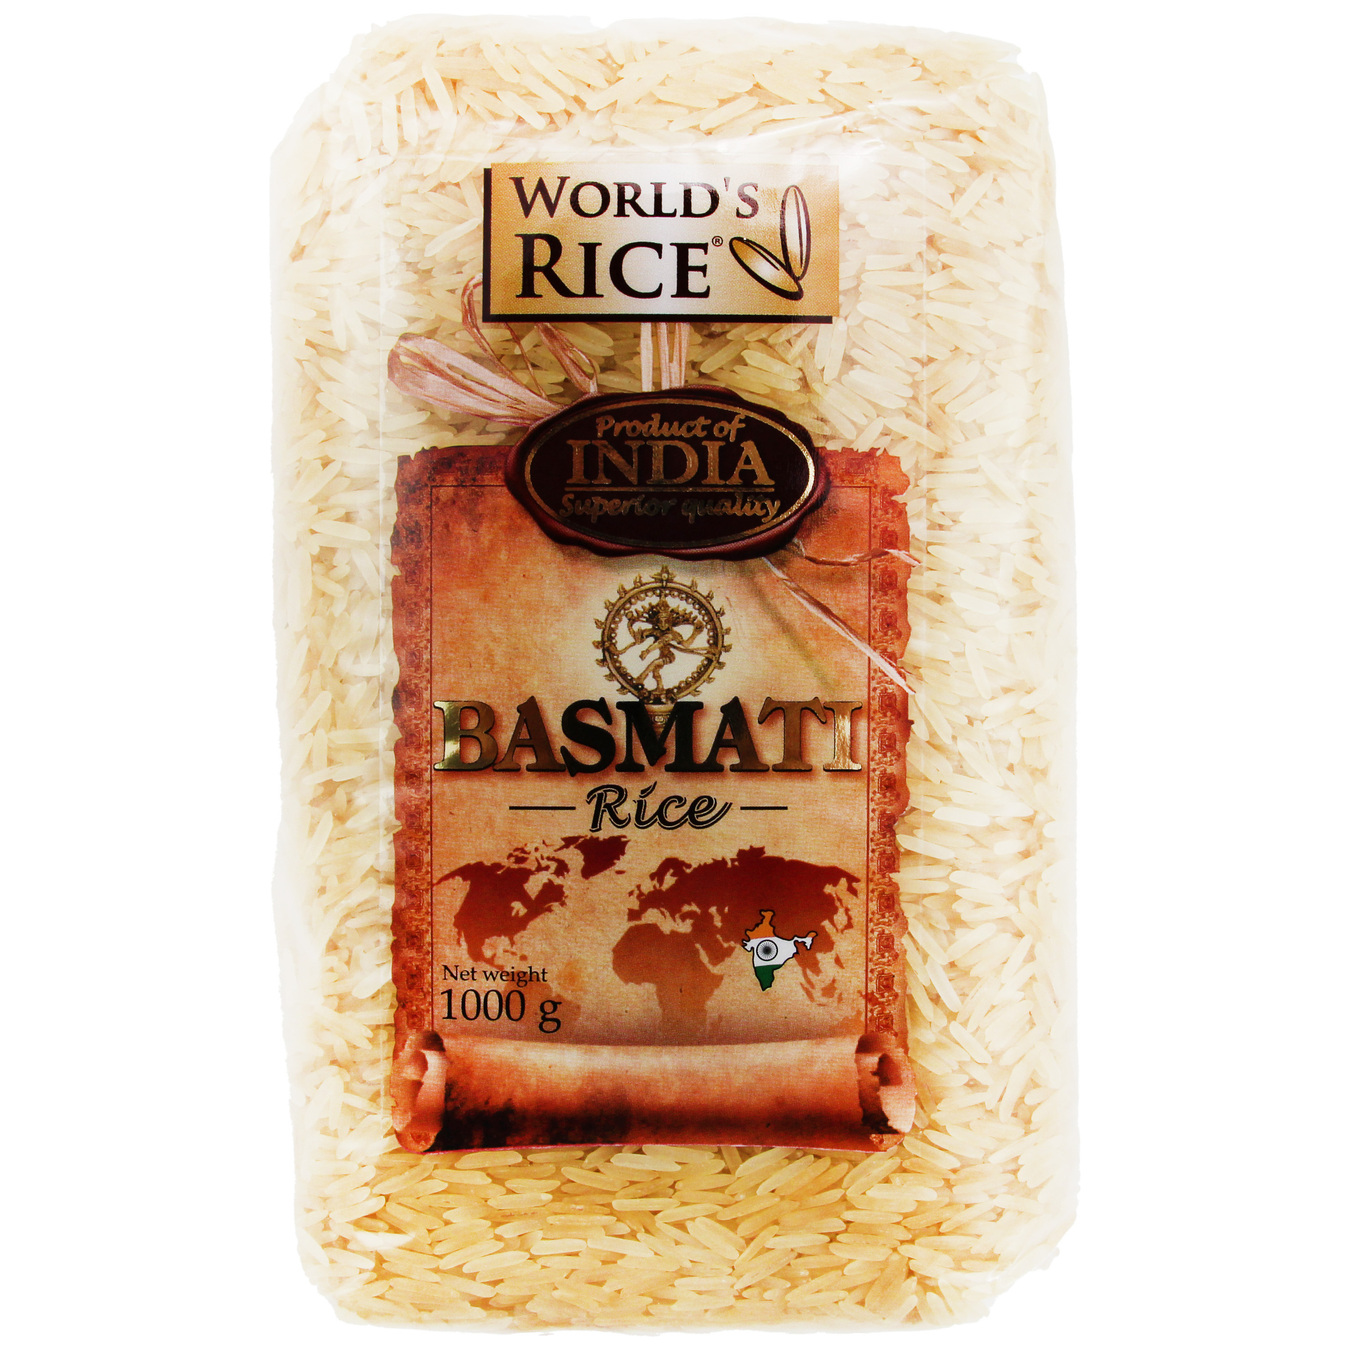 World's Rice basmati white rice 1000g